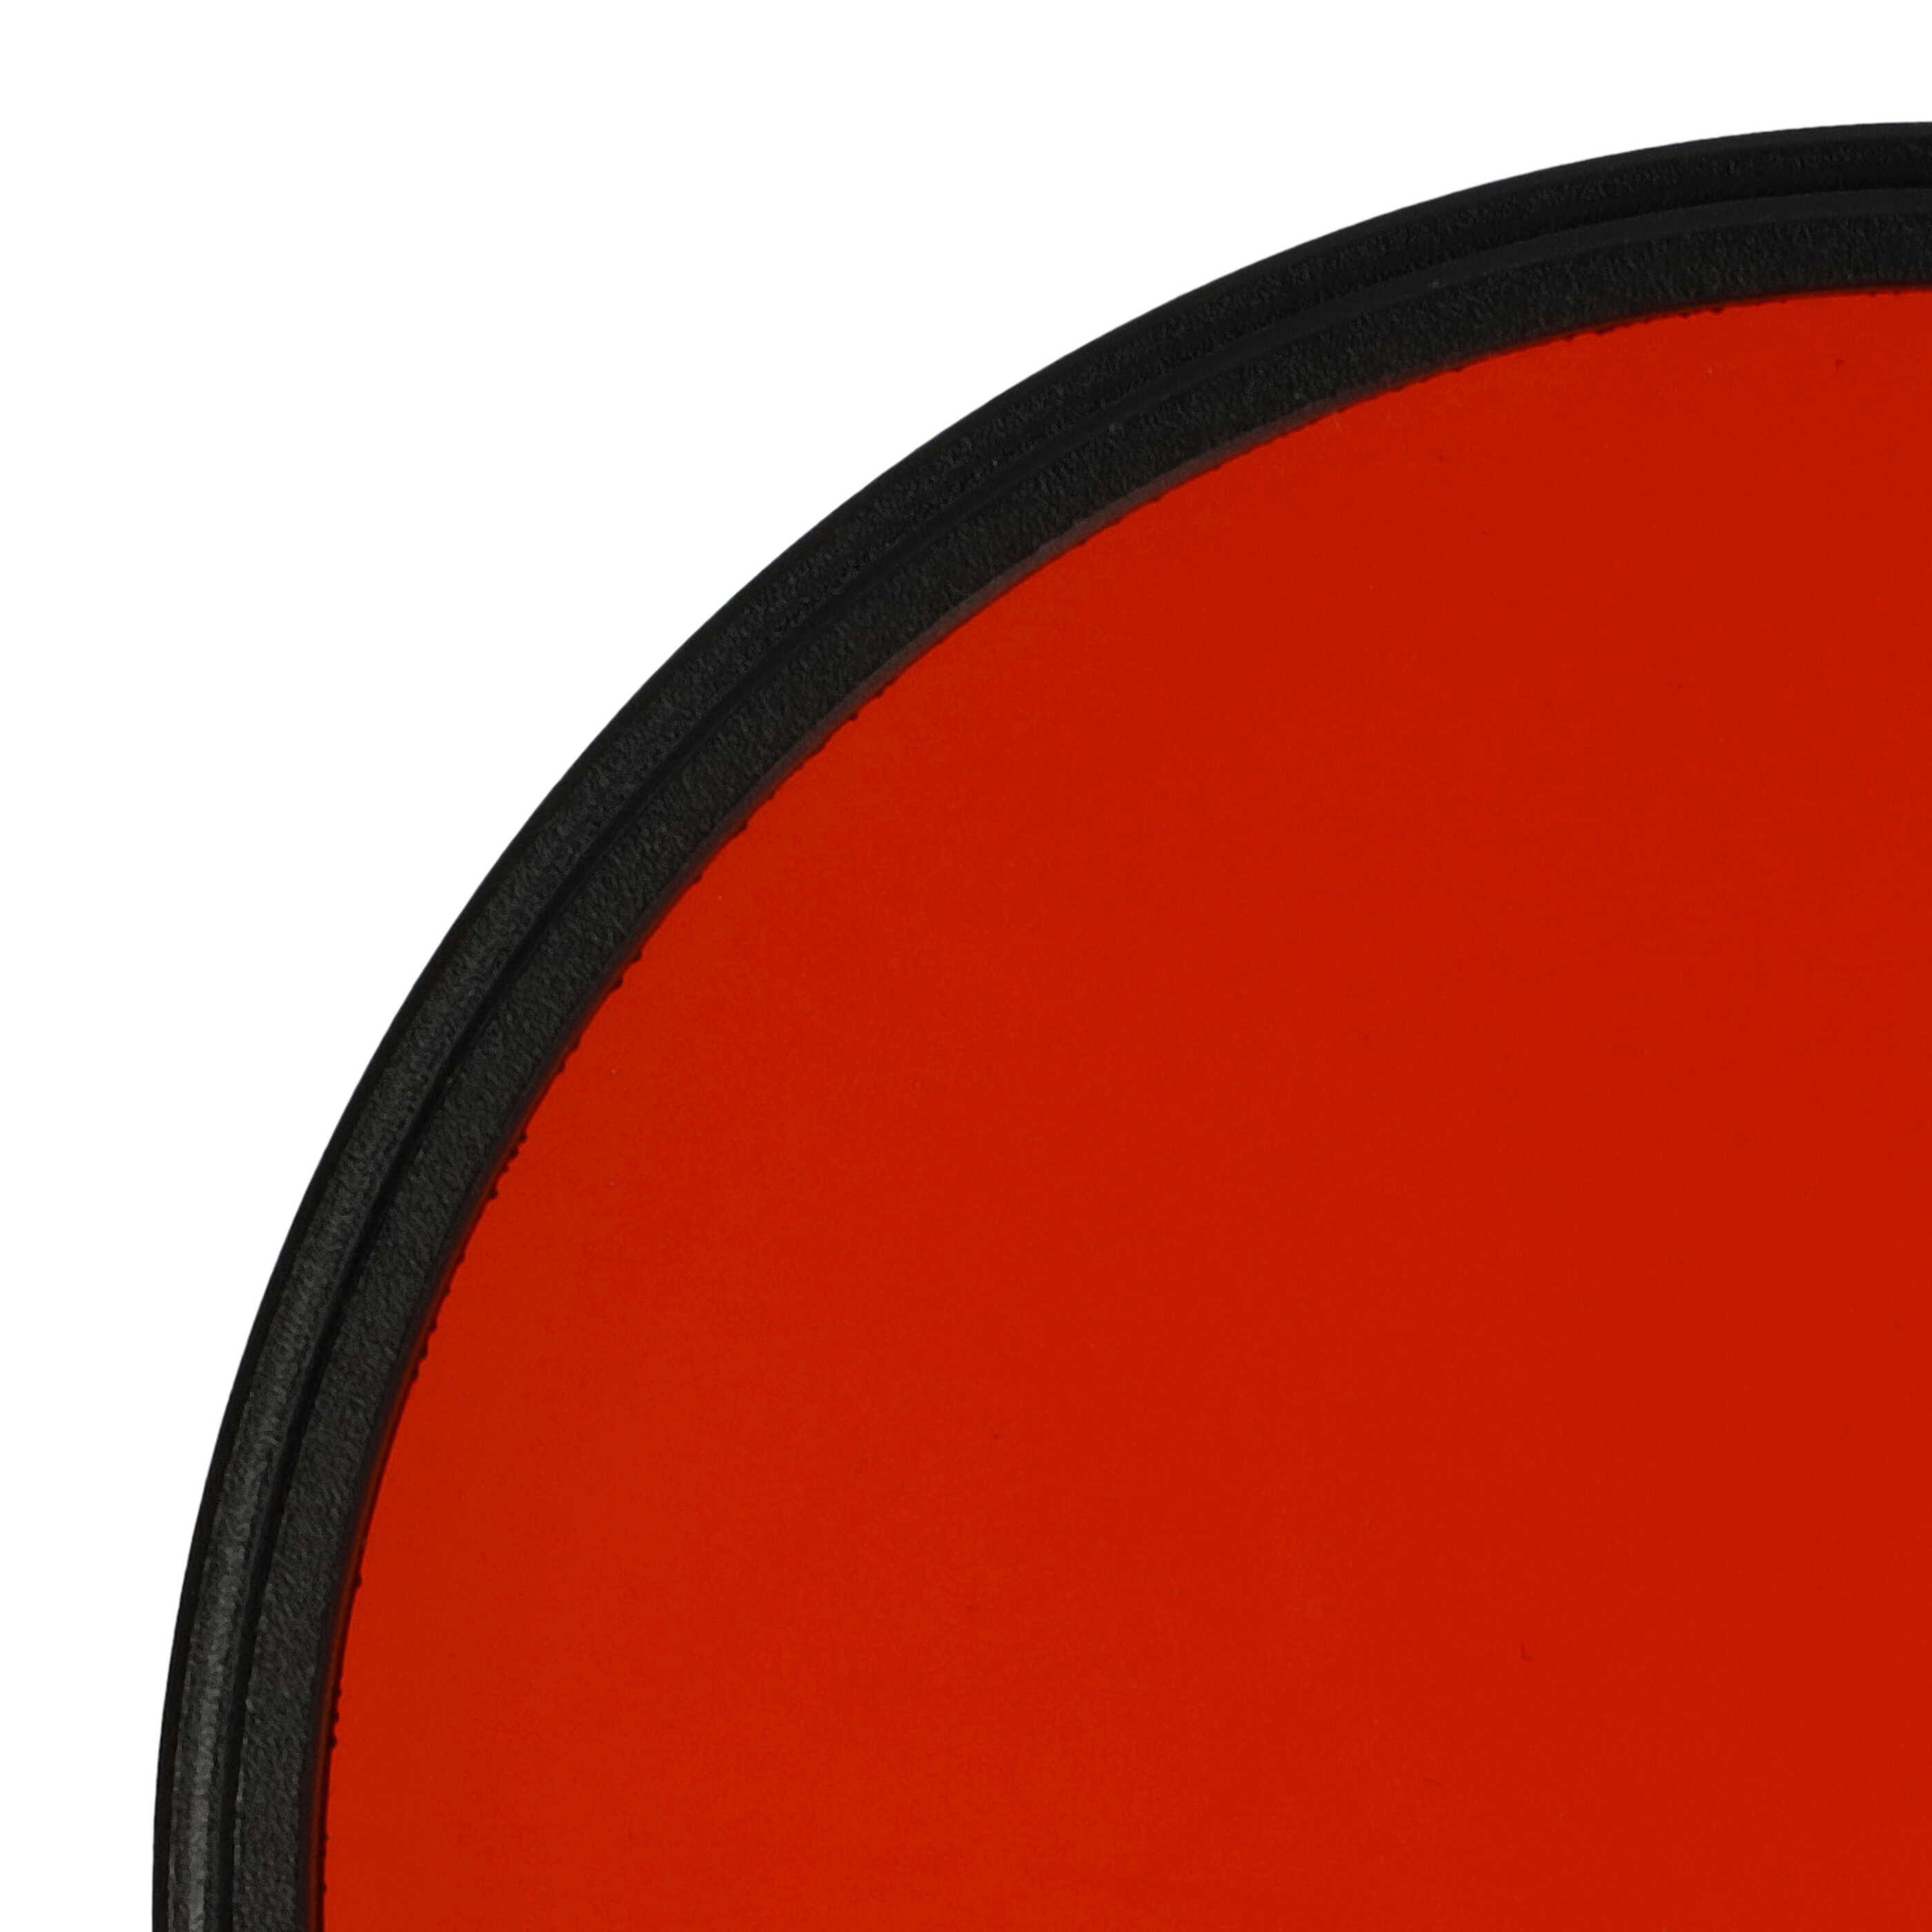 Filtre de couleur orange pour objectifs d'appareils photo de 72 mm - Filtre orange